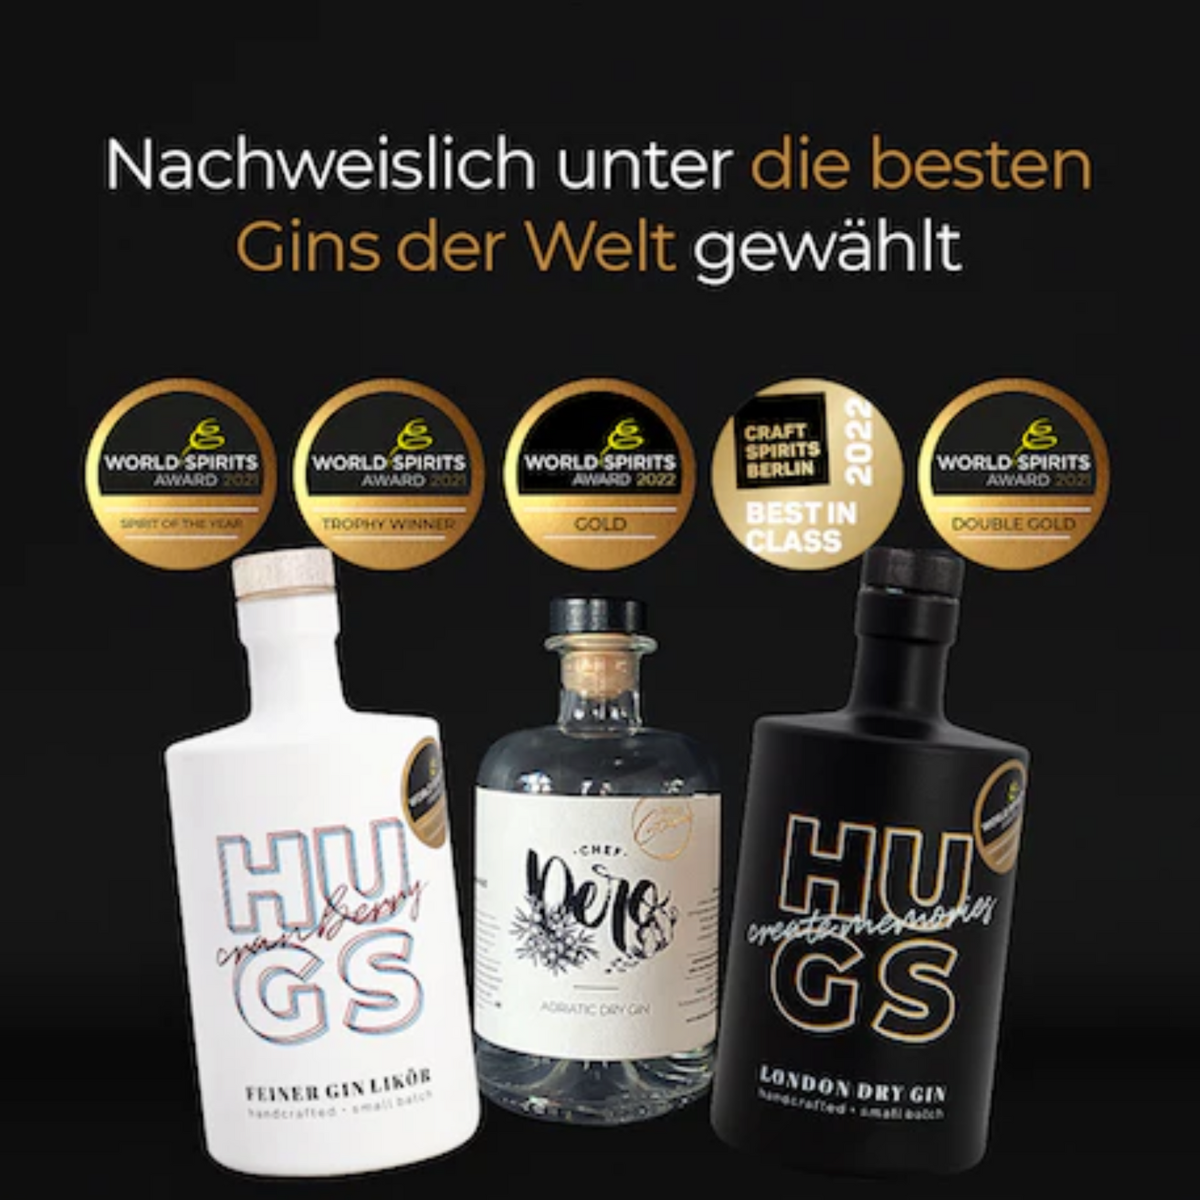 HUGS - Testsieger Gin Tastingbox (3 x 0,1l)